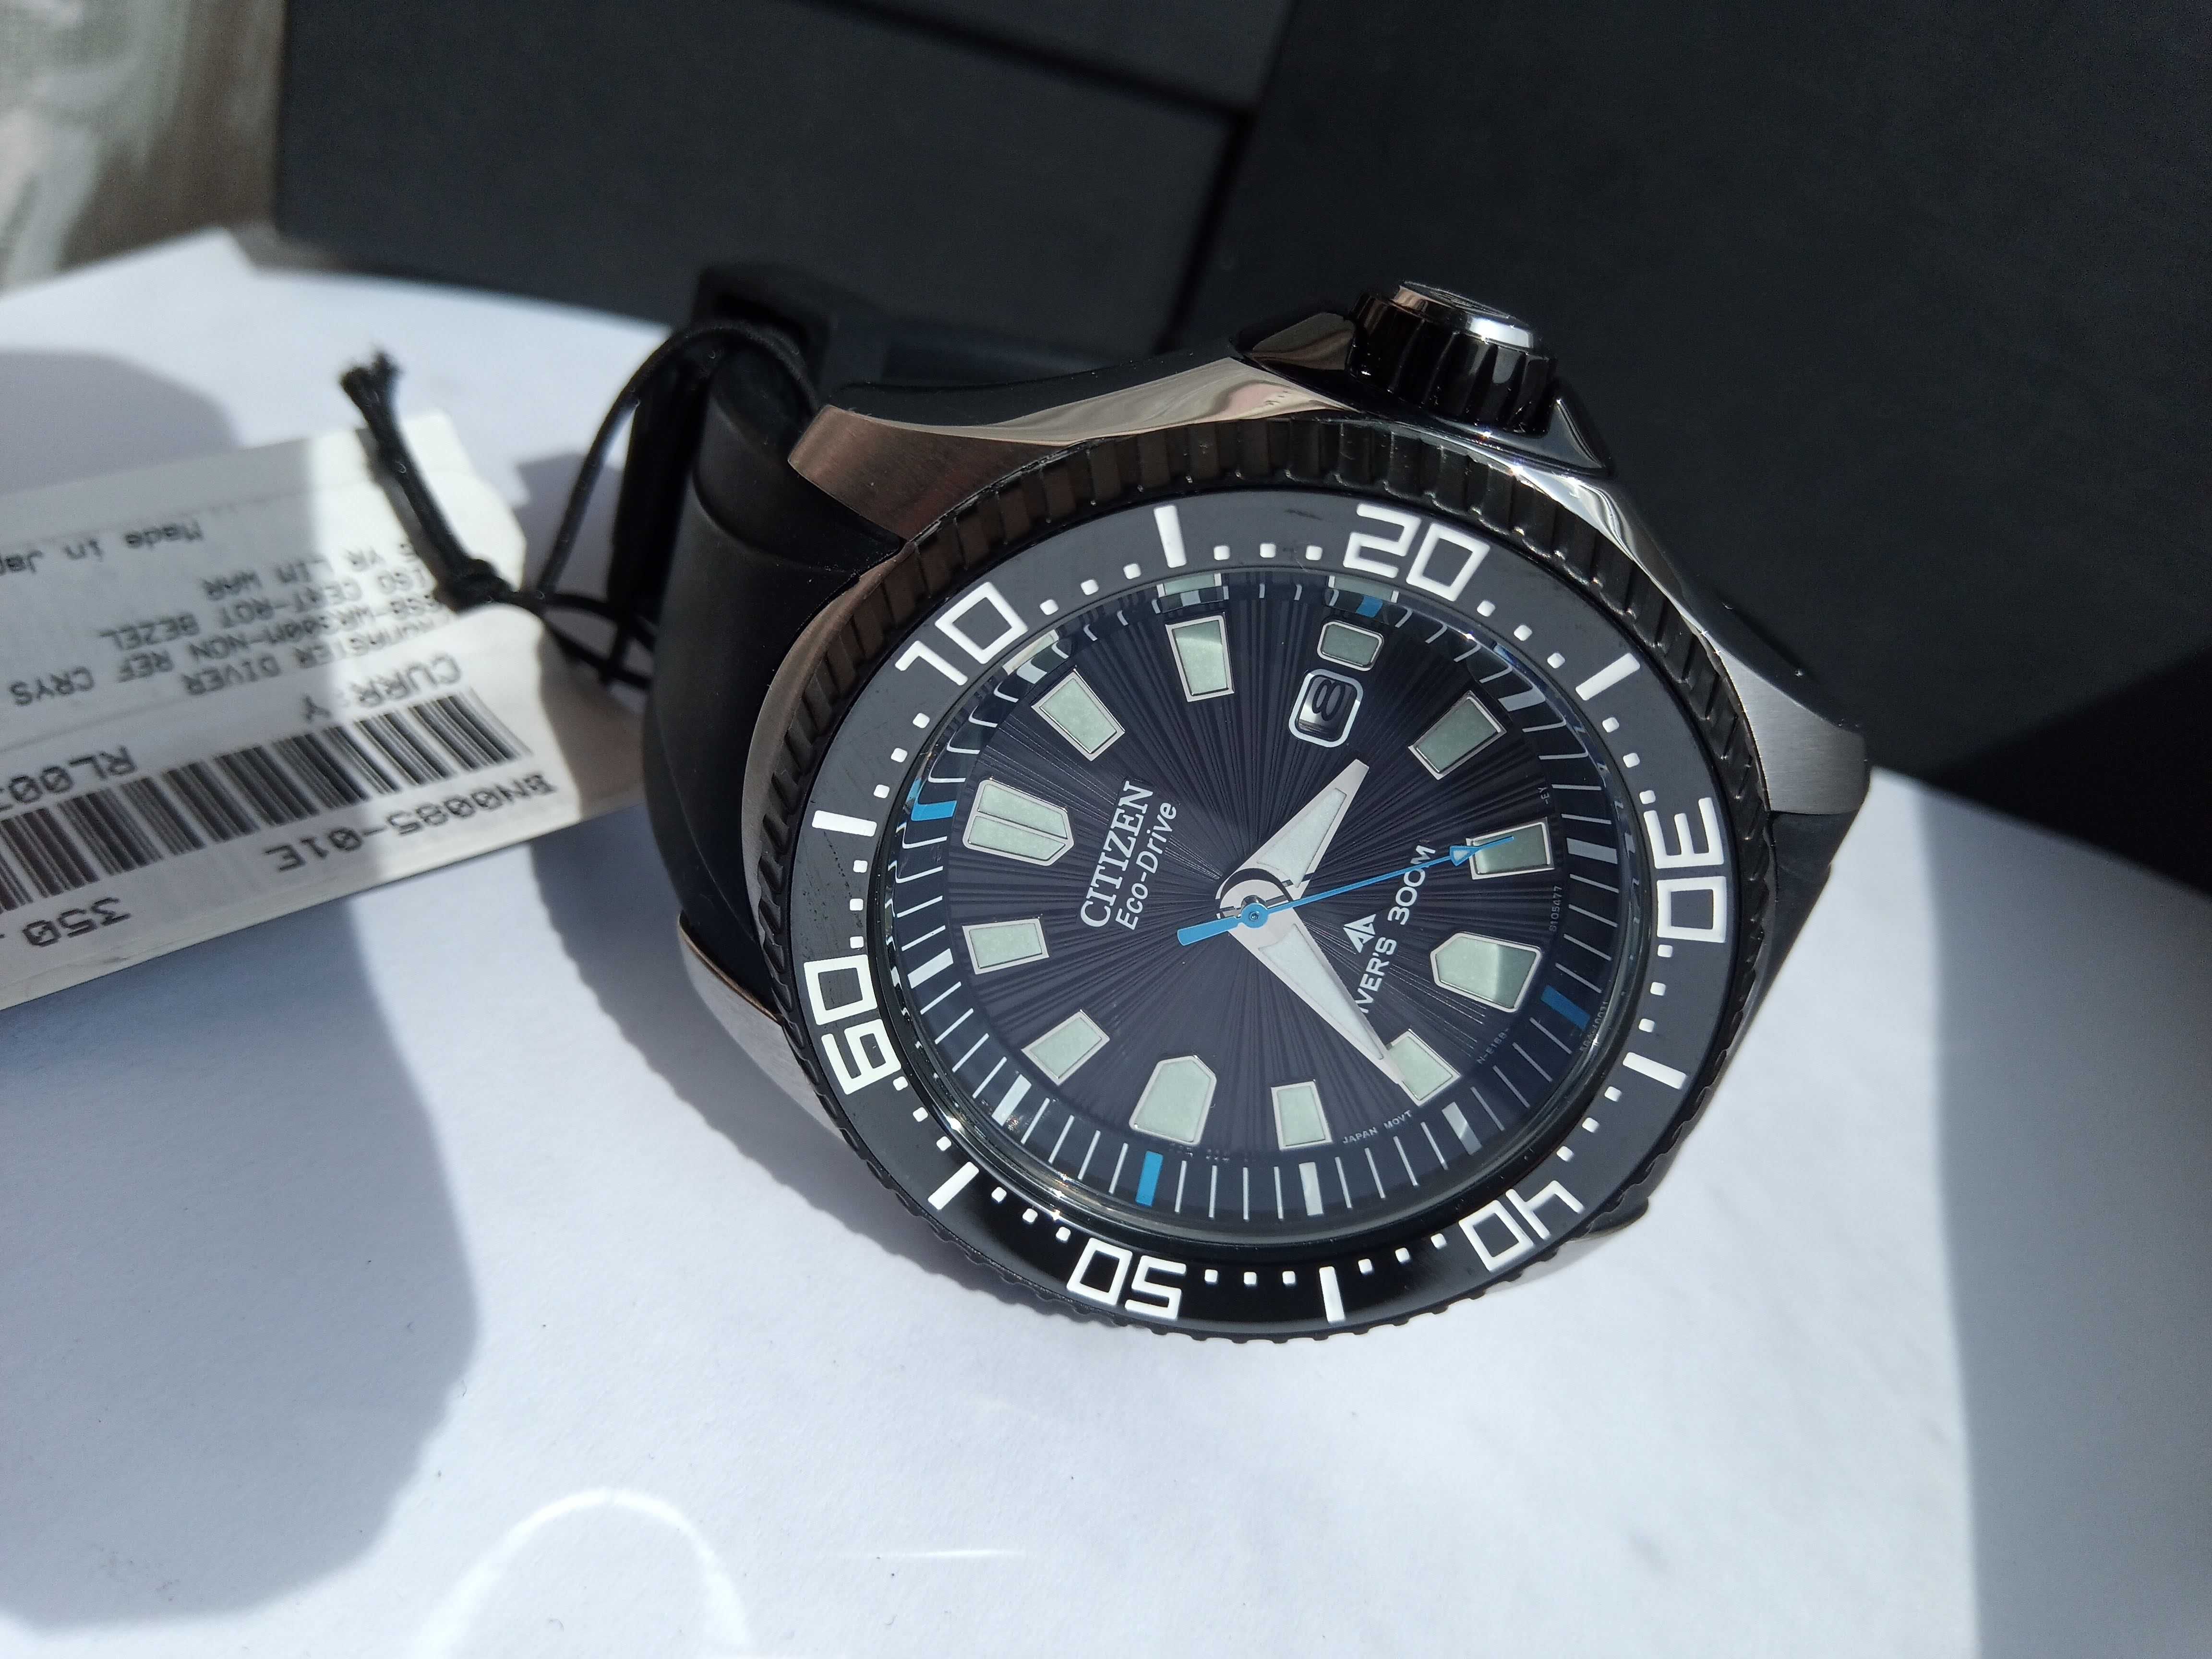 Японские мужские 300 м дайверские часы Citizen Eco-Drive BN0085-01E